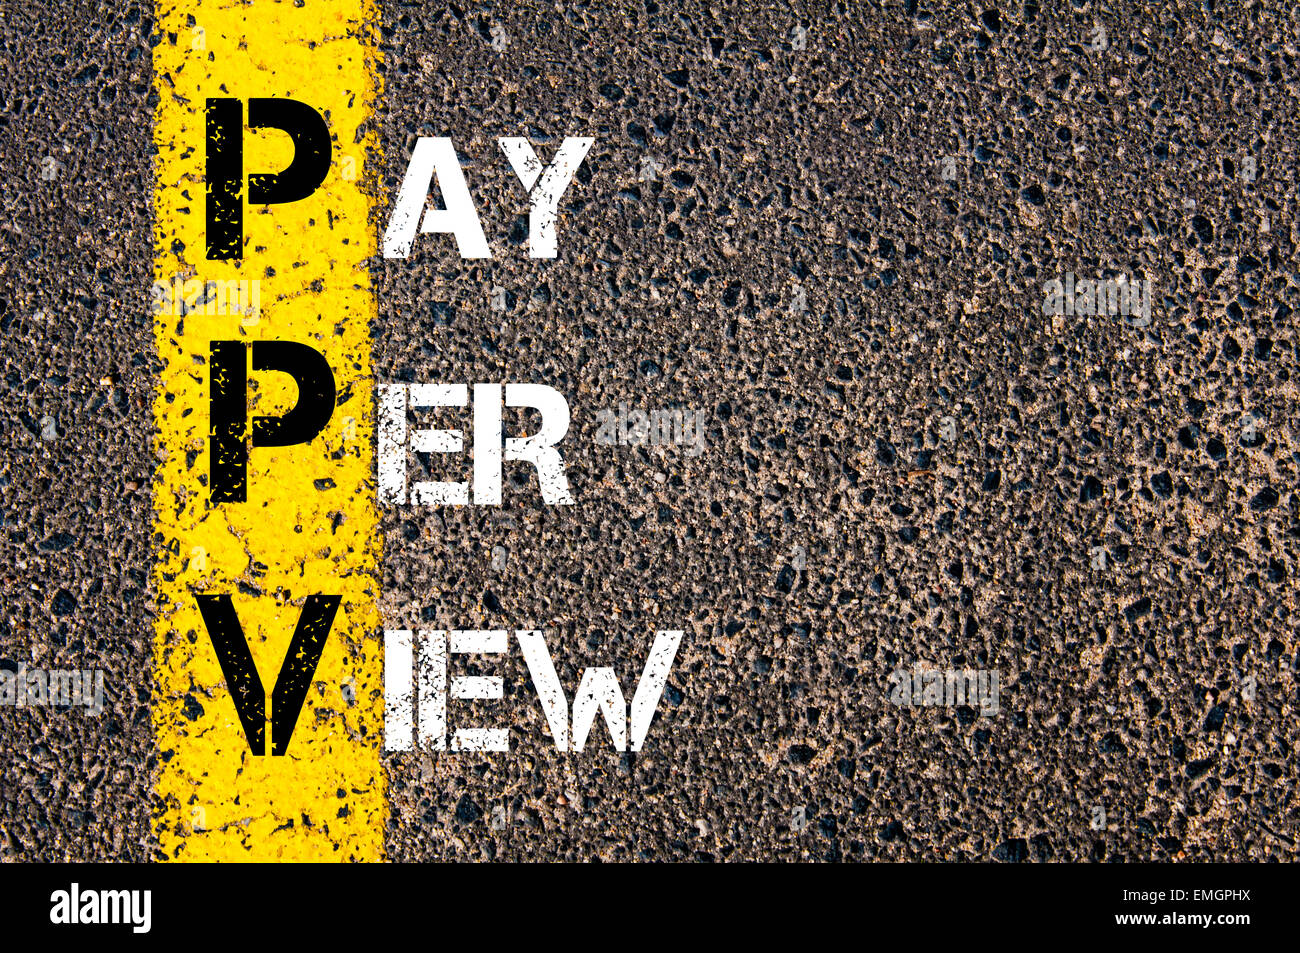 Acronimo di Business PPV come Pay Per View. Vernice gialla linea sulla strada contro lo sfondo di asfalto. Immagine concettuale Foto Stock